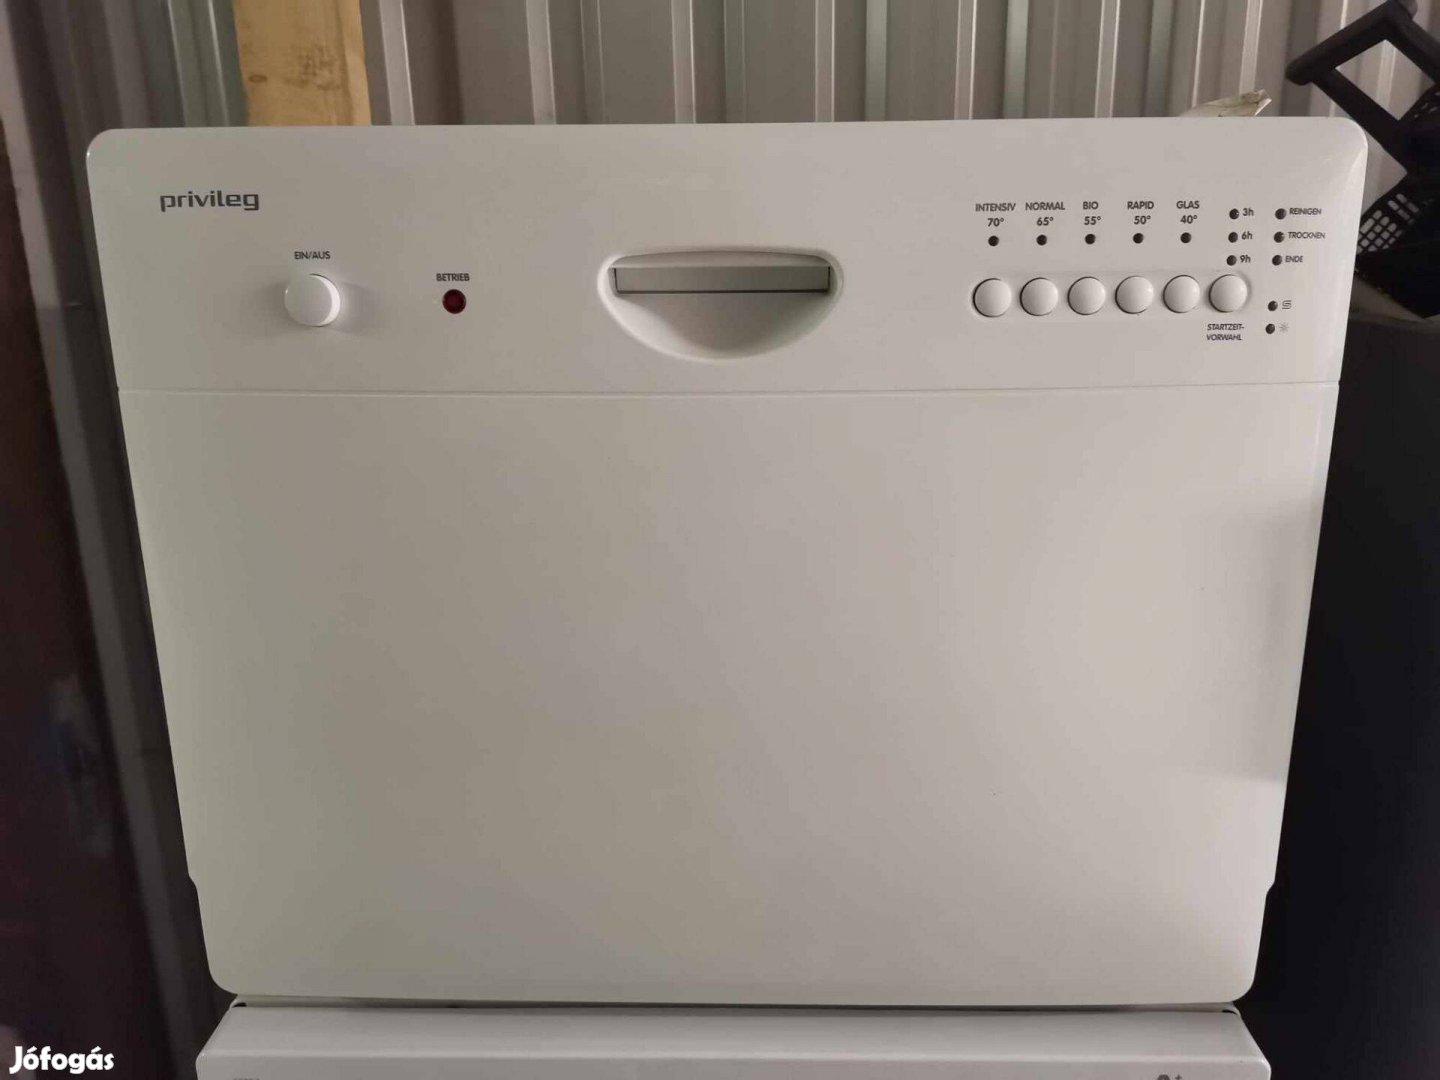 Privileg asztali mosogatógép 6 hónap garanciával,újszerű eladó